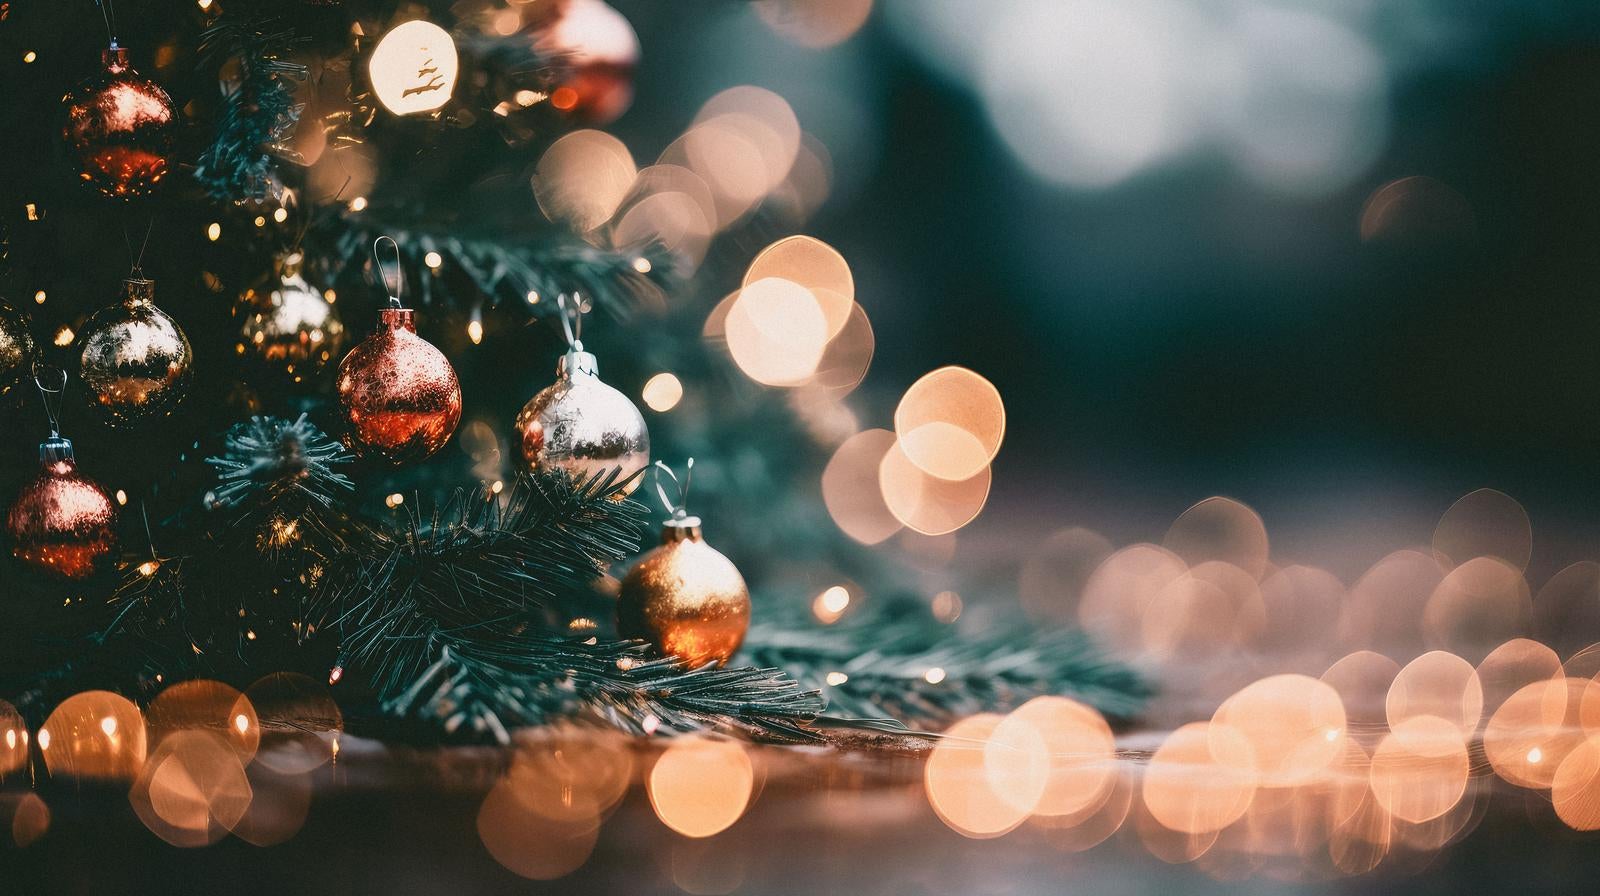 「クリスマスツリーのデコレーションと煌めくイルミネーション」の写真